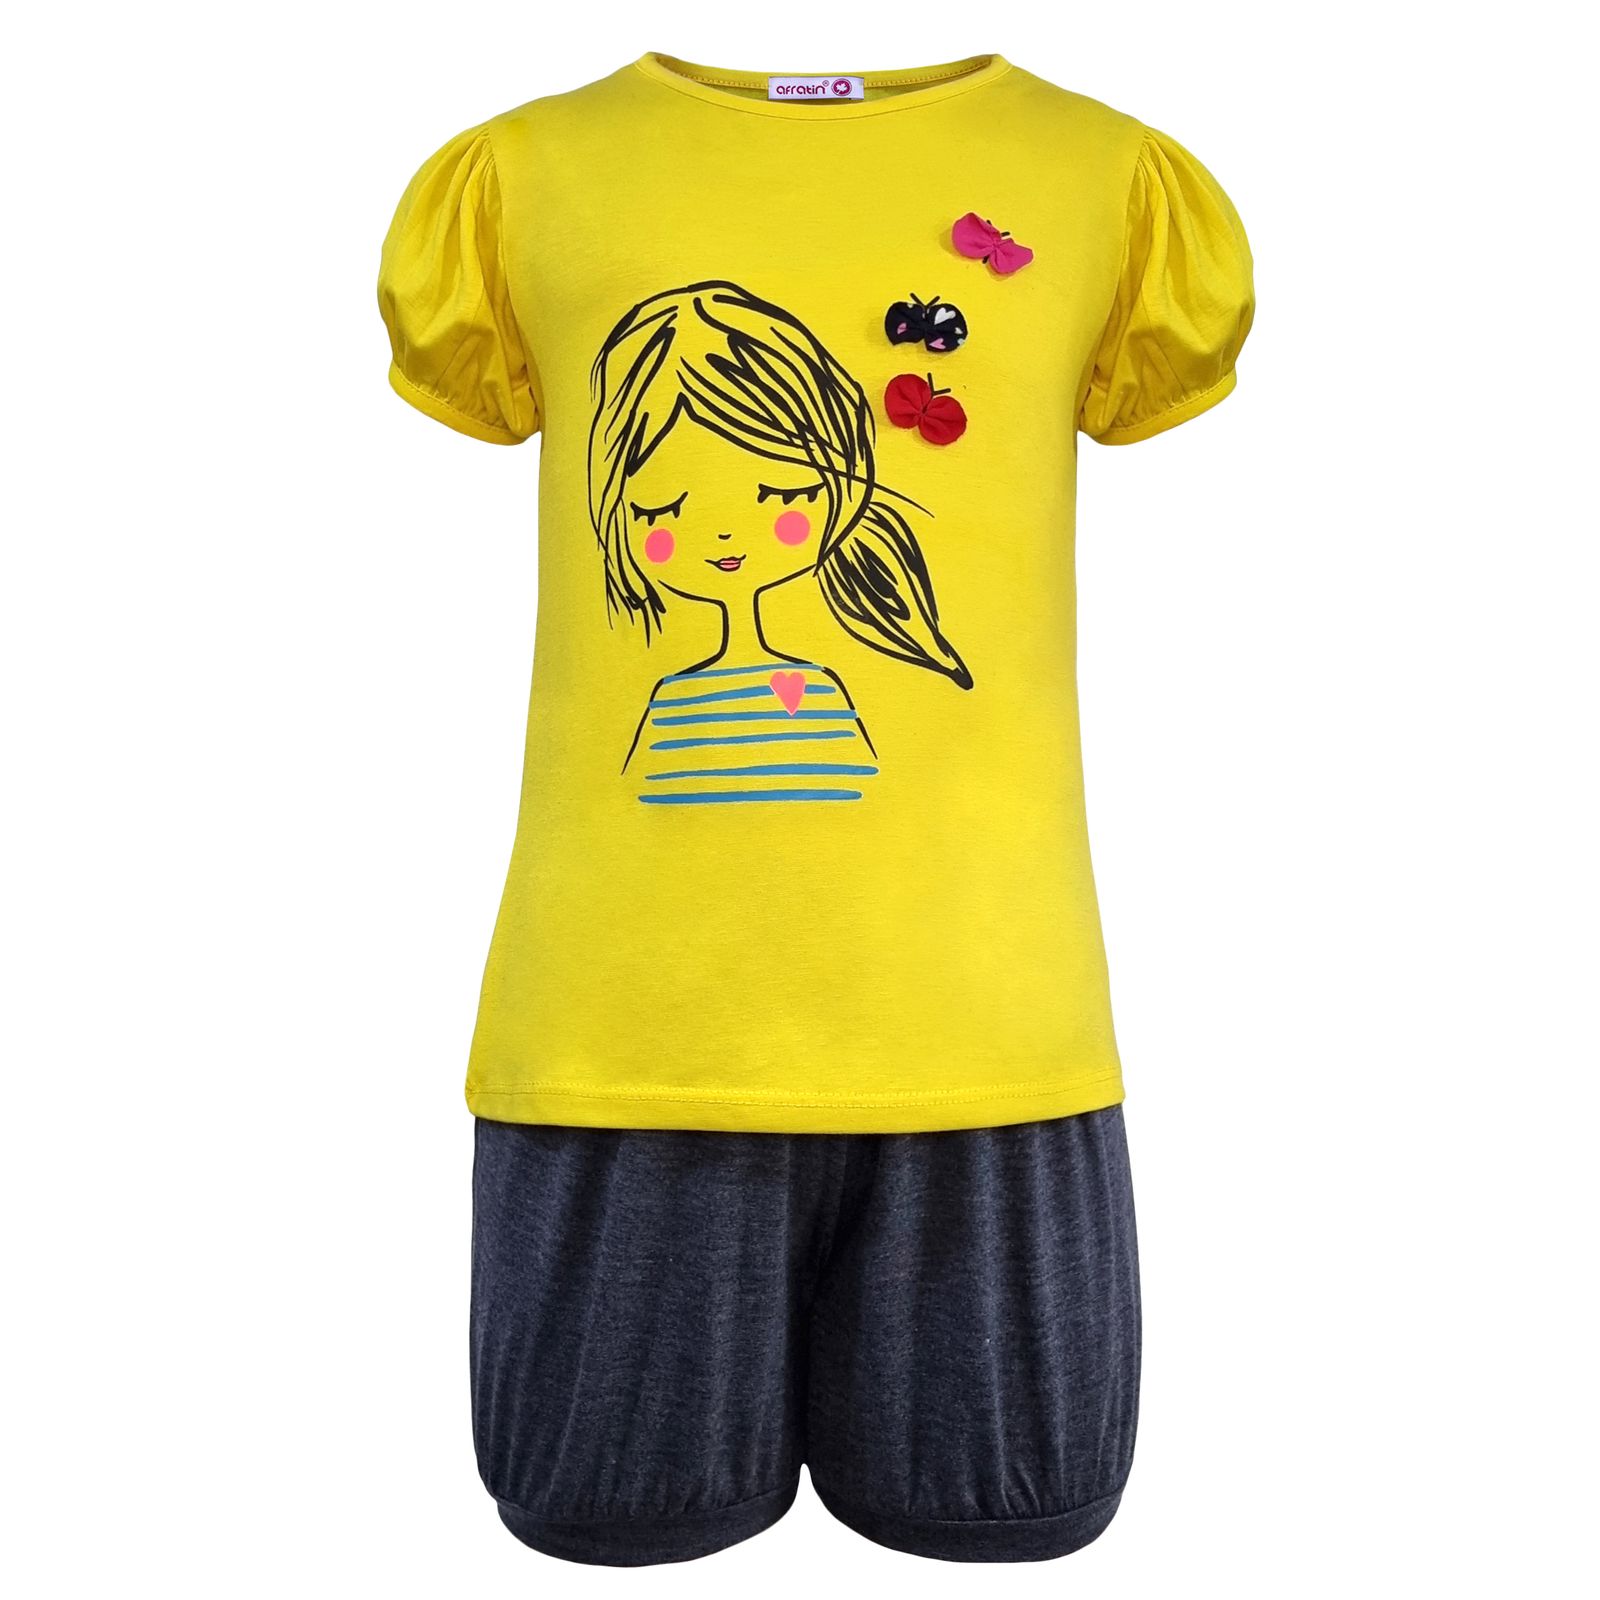 ست تی شرت و شلوارک دخترانه افراتین مدل دختر و پروانه رنگ زرد -  - 1